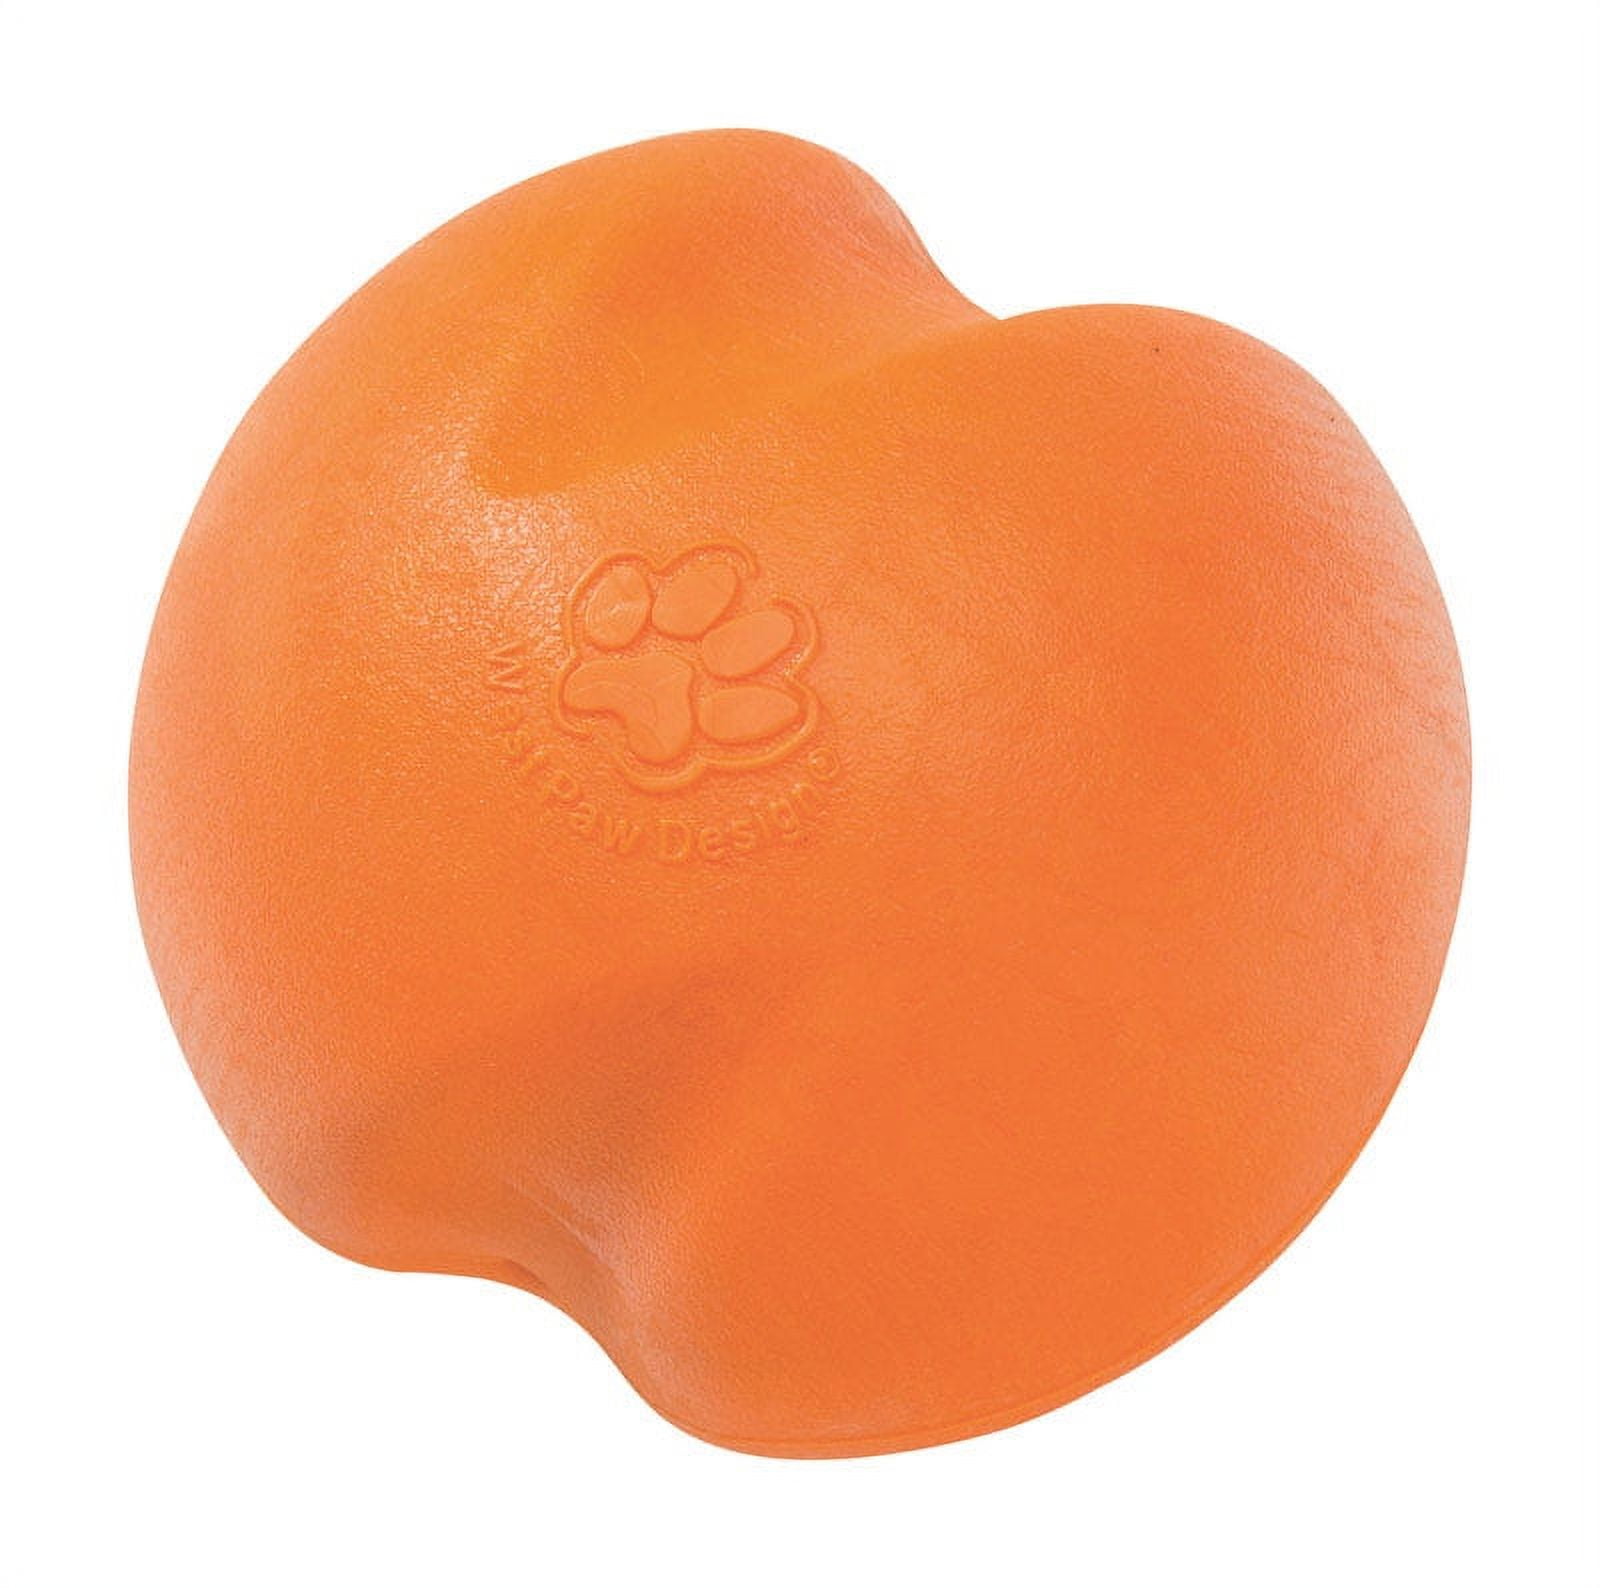 West Paw 8000439 Zogoflex Orange Jive Synthetic Rubber Ball Dog Toy, Large